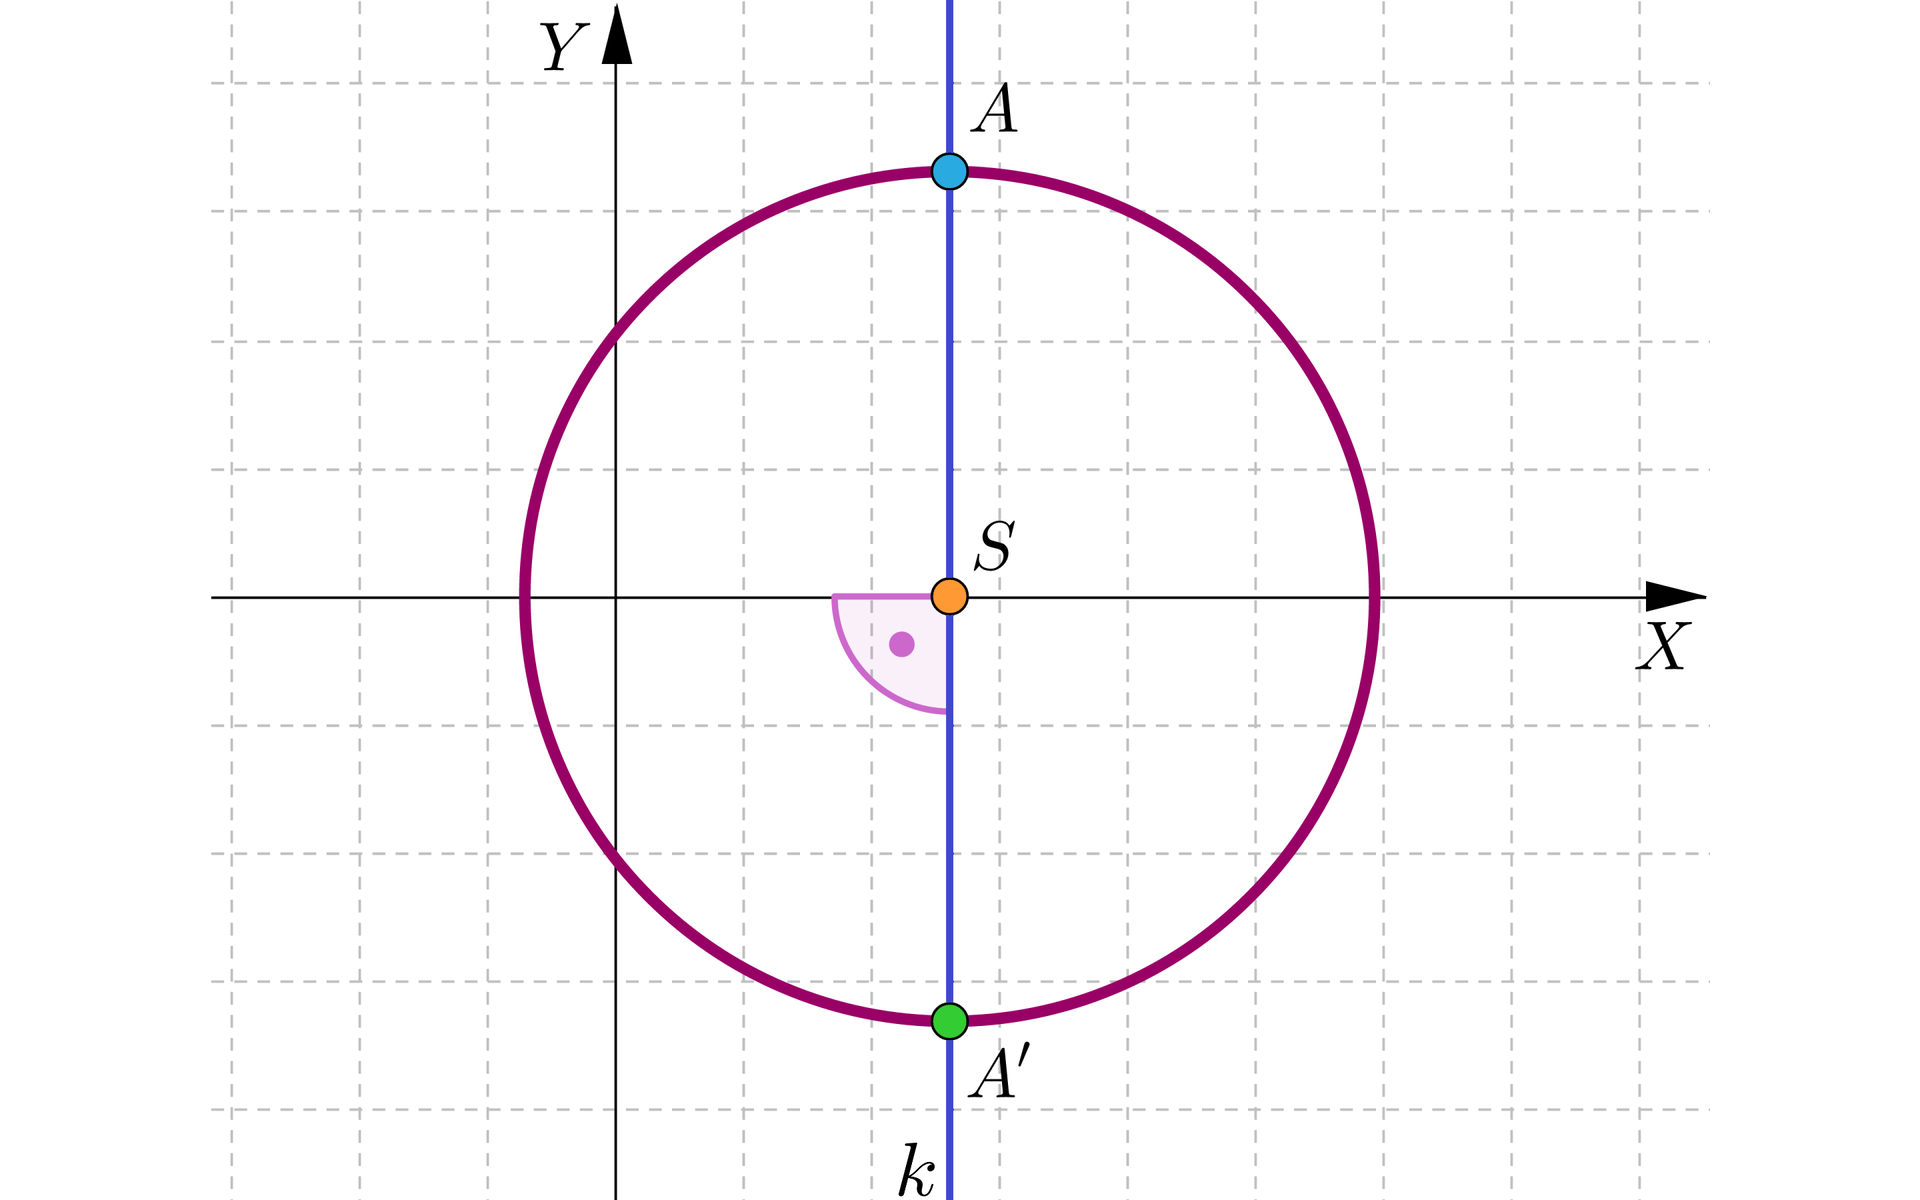 Ilustracja czwarta przedstawia układ współrzędnych z poziomą osią x i pionową osią y. W pierwszej ćwiartce układu współrzędnych zamalowaną kropką zaznaczony został punkt który jest podpisany literą A. Przez punkt A prostopadle do osi x poprowadzona została prosta, która jest podpisana literą k. Punkt przecięcia się prostej k z osią x został podpisany literą S i jest on środkiem okręgu, który przechodzi przez punkt A. W czwartej ćwiartce zaznaczony został punkt przecięcia się okręgu z prostą k, punkt ten podpisano A prim.